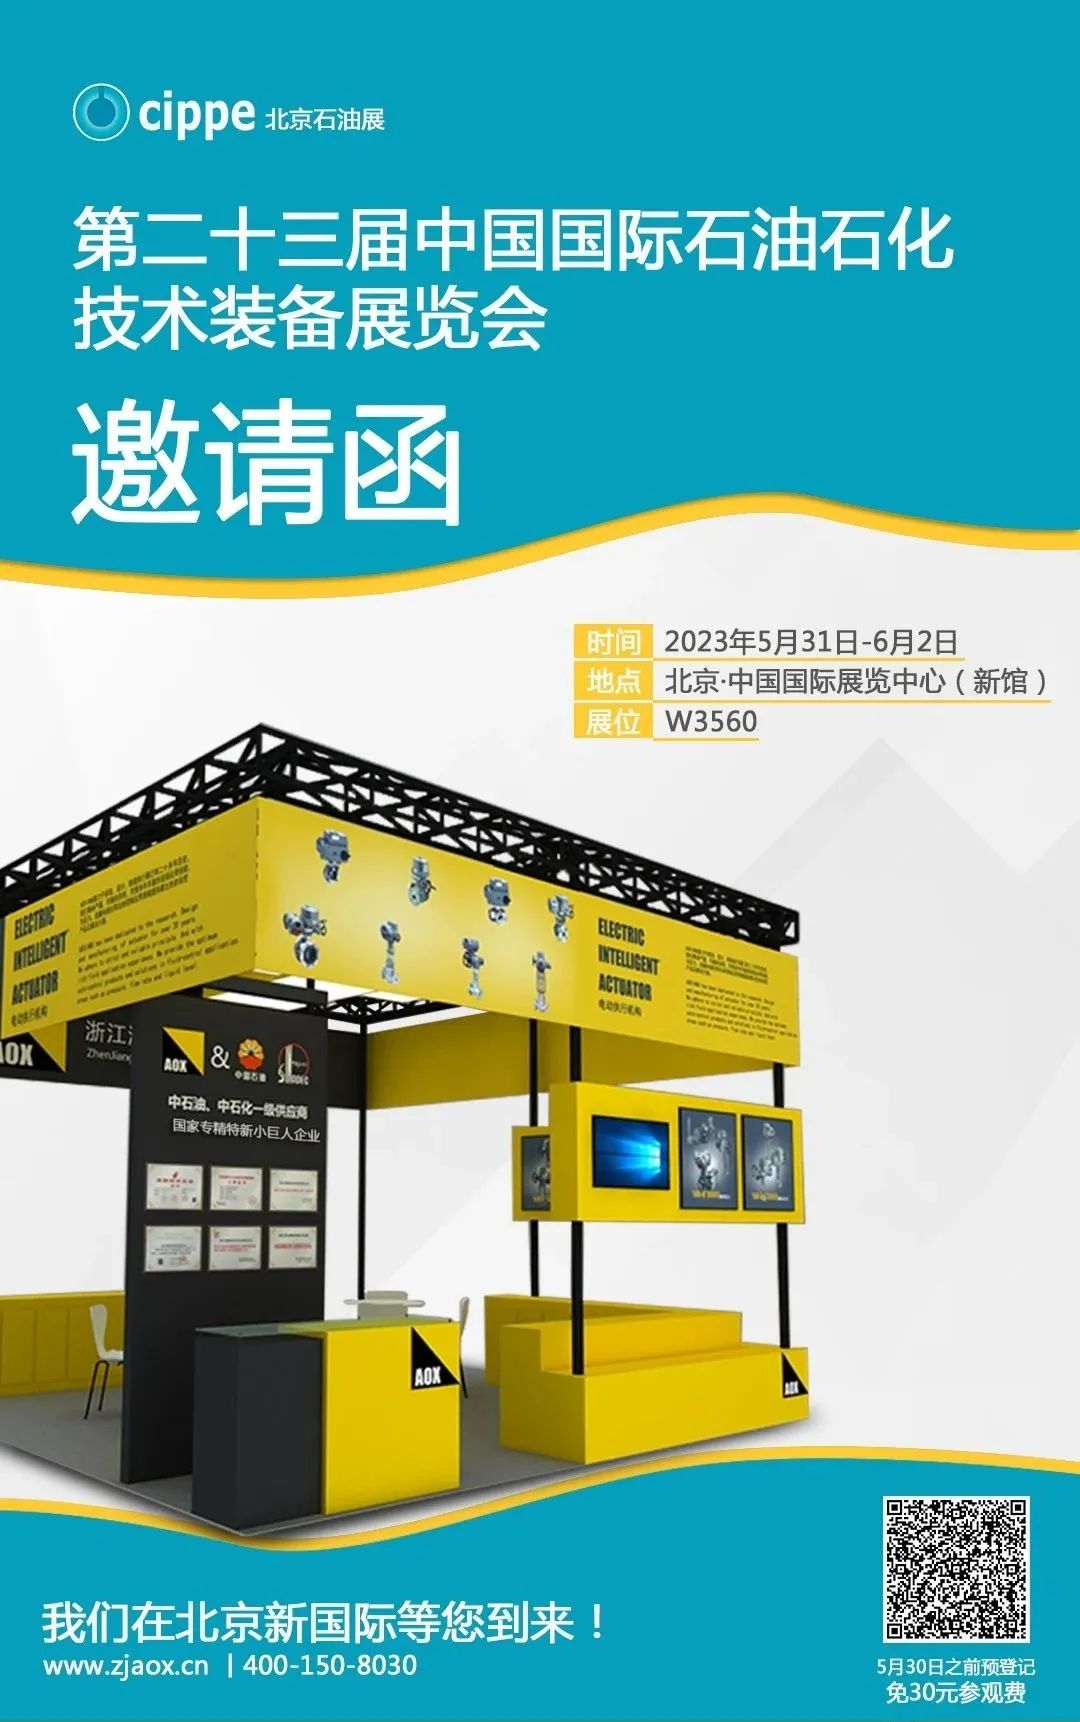 Scrisoare de invitație: Din 31 mai până în 2 iunie 2023, cea de-a 23-a Expoziție internațională de tehnologie și echipamente petroliere și petrochimice din China, Zhejiang Aoxiang vă invită să veniți!